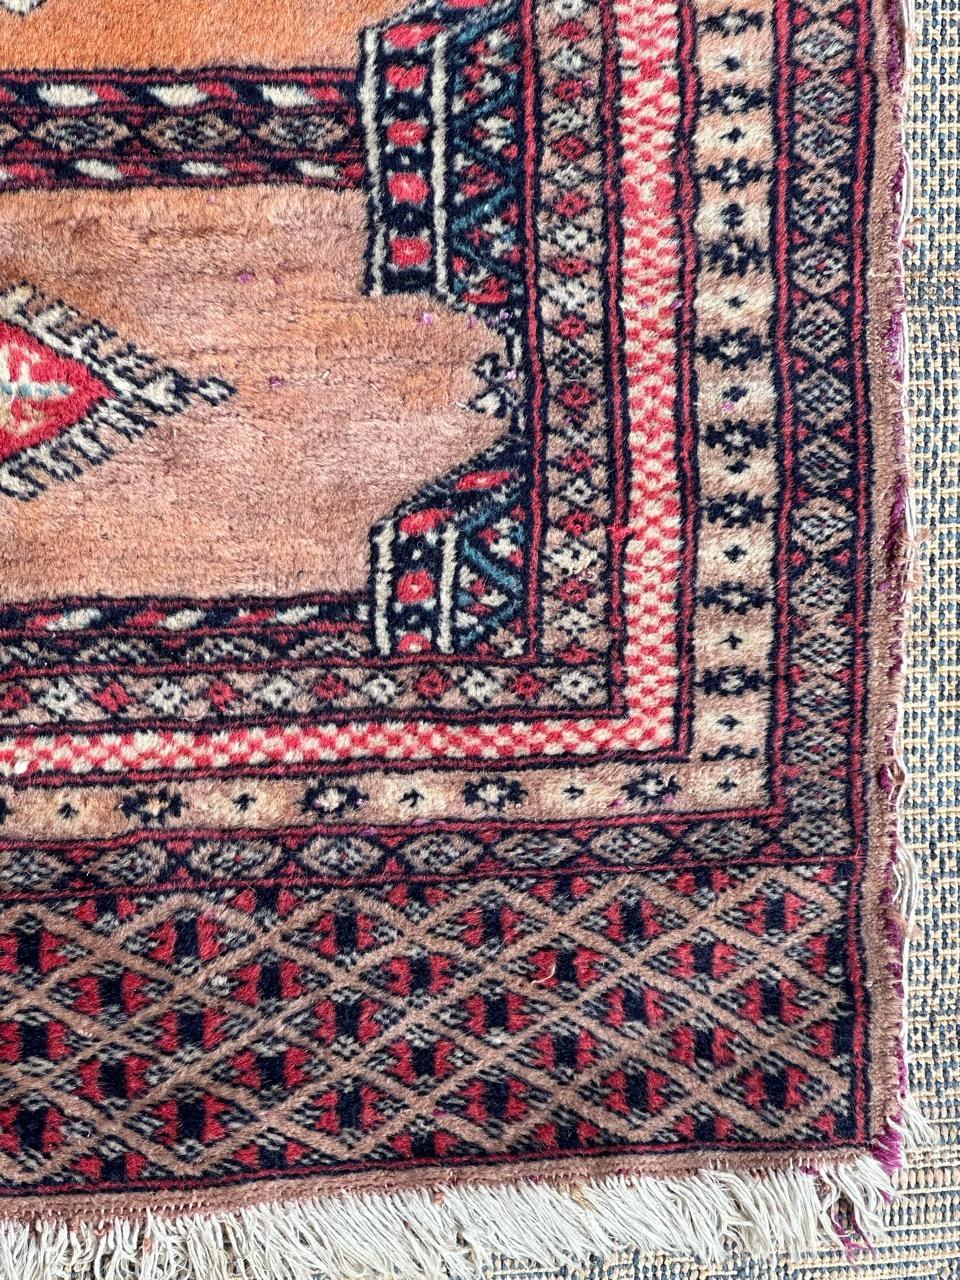 Schöner vintage pakistanischer Teppich mit schönem turkmenischen Design und schönen Farben, komplett handgeknüpft mit Wolle auf Baumwollbasis 

✨✨✨
